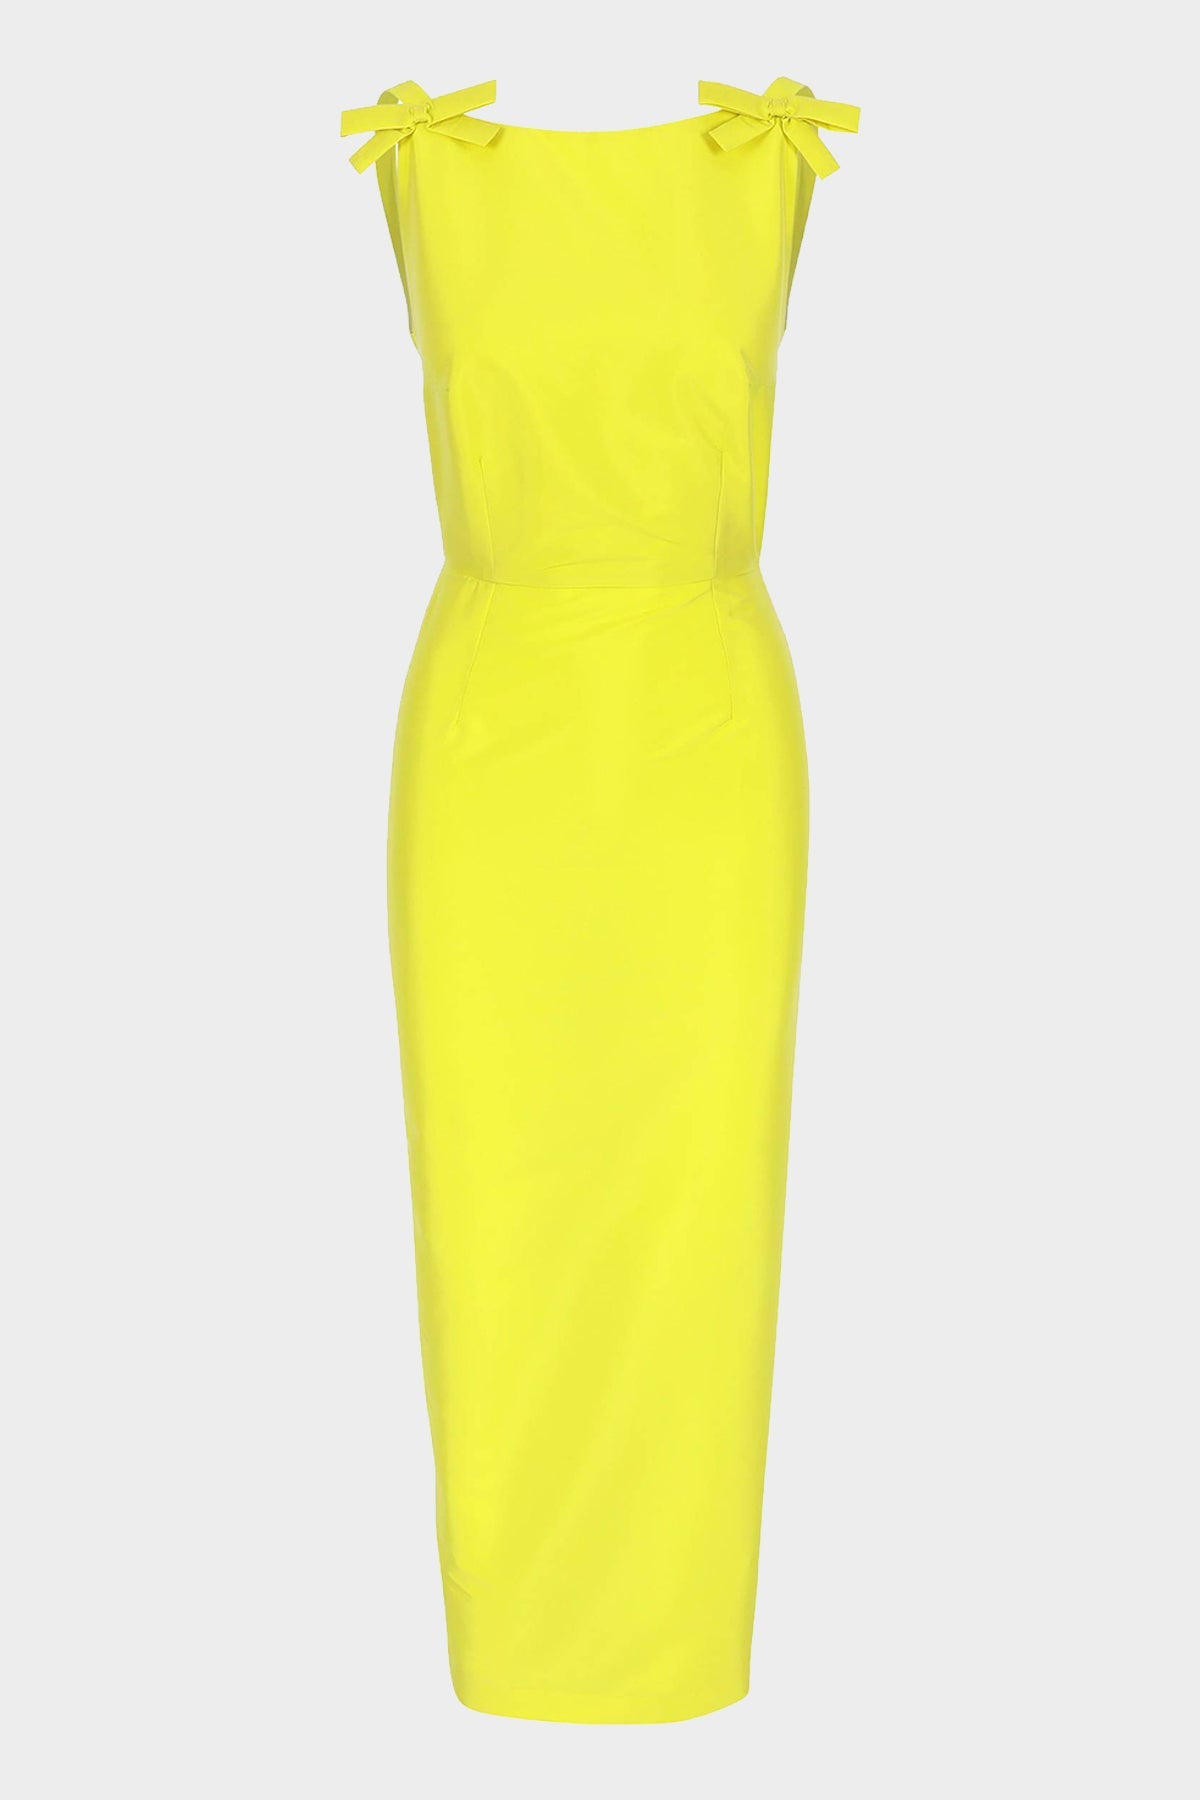 Kim Midi Dress in Yellow - shop-olivia.com